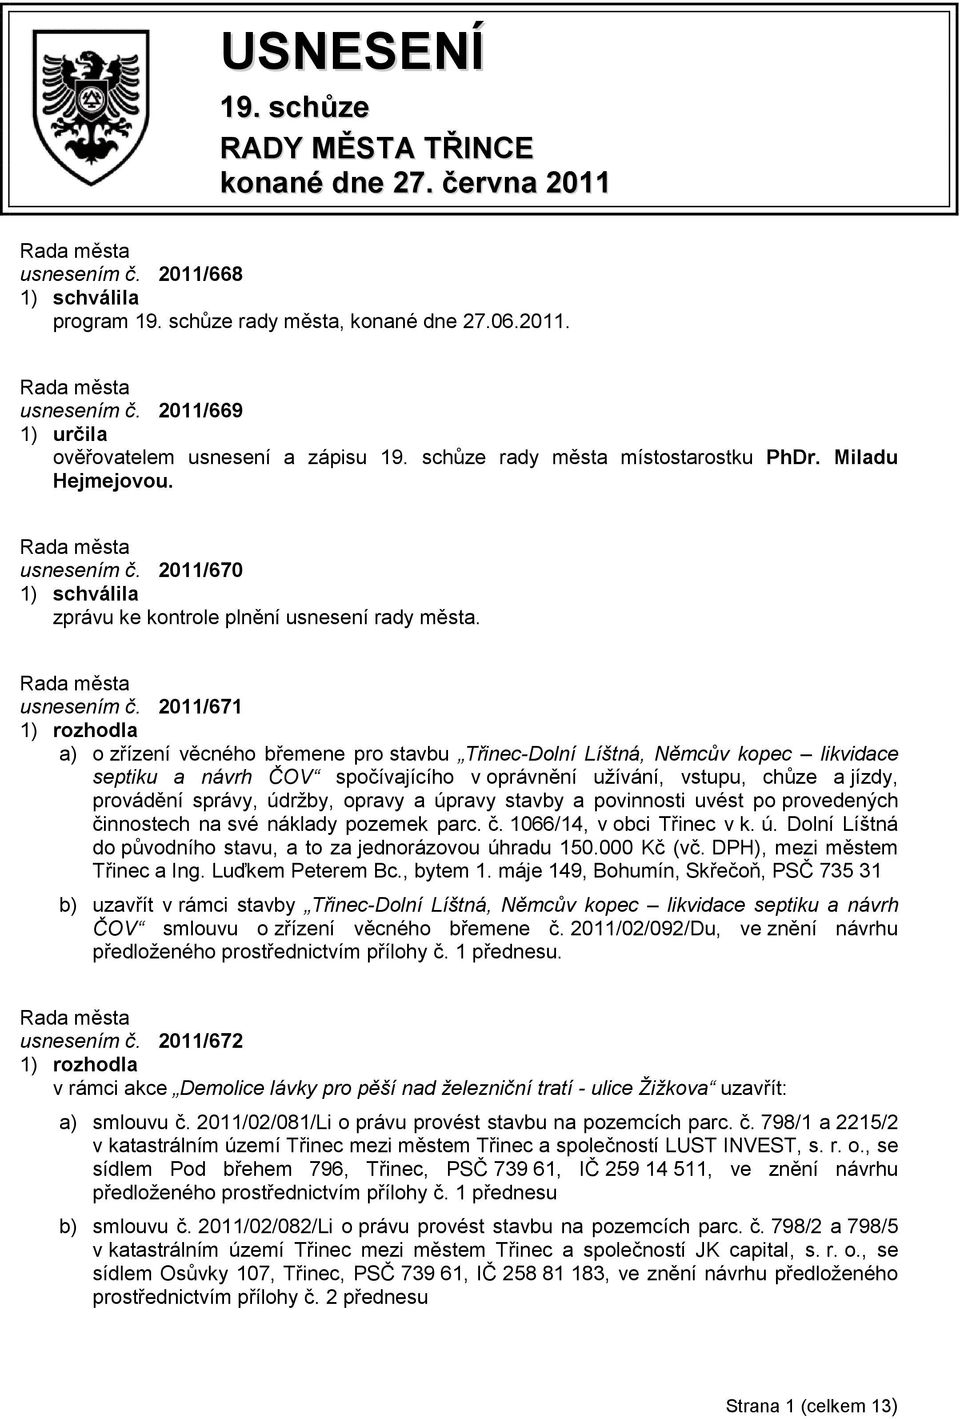 2011/670 1) schválila zprávu ke kontrole plnění usnesení rady města. usnesením č.